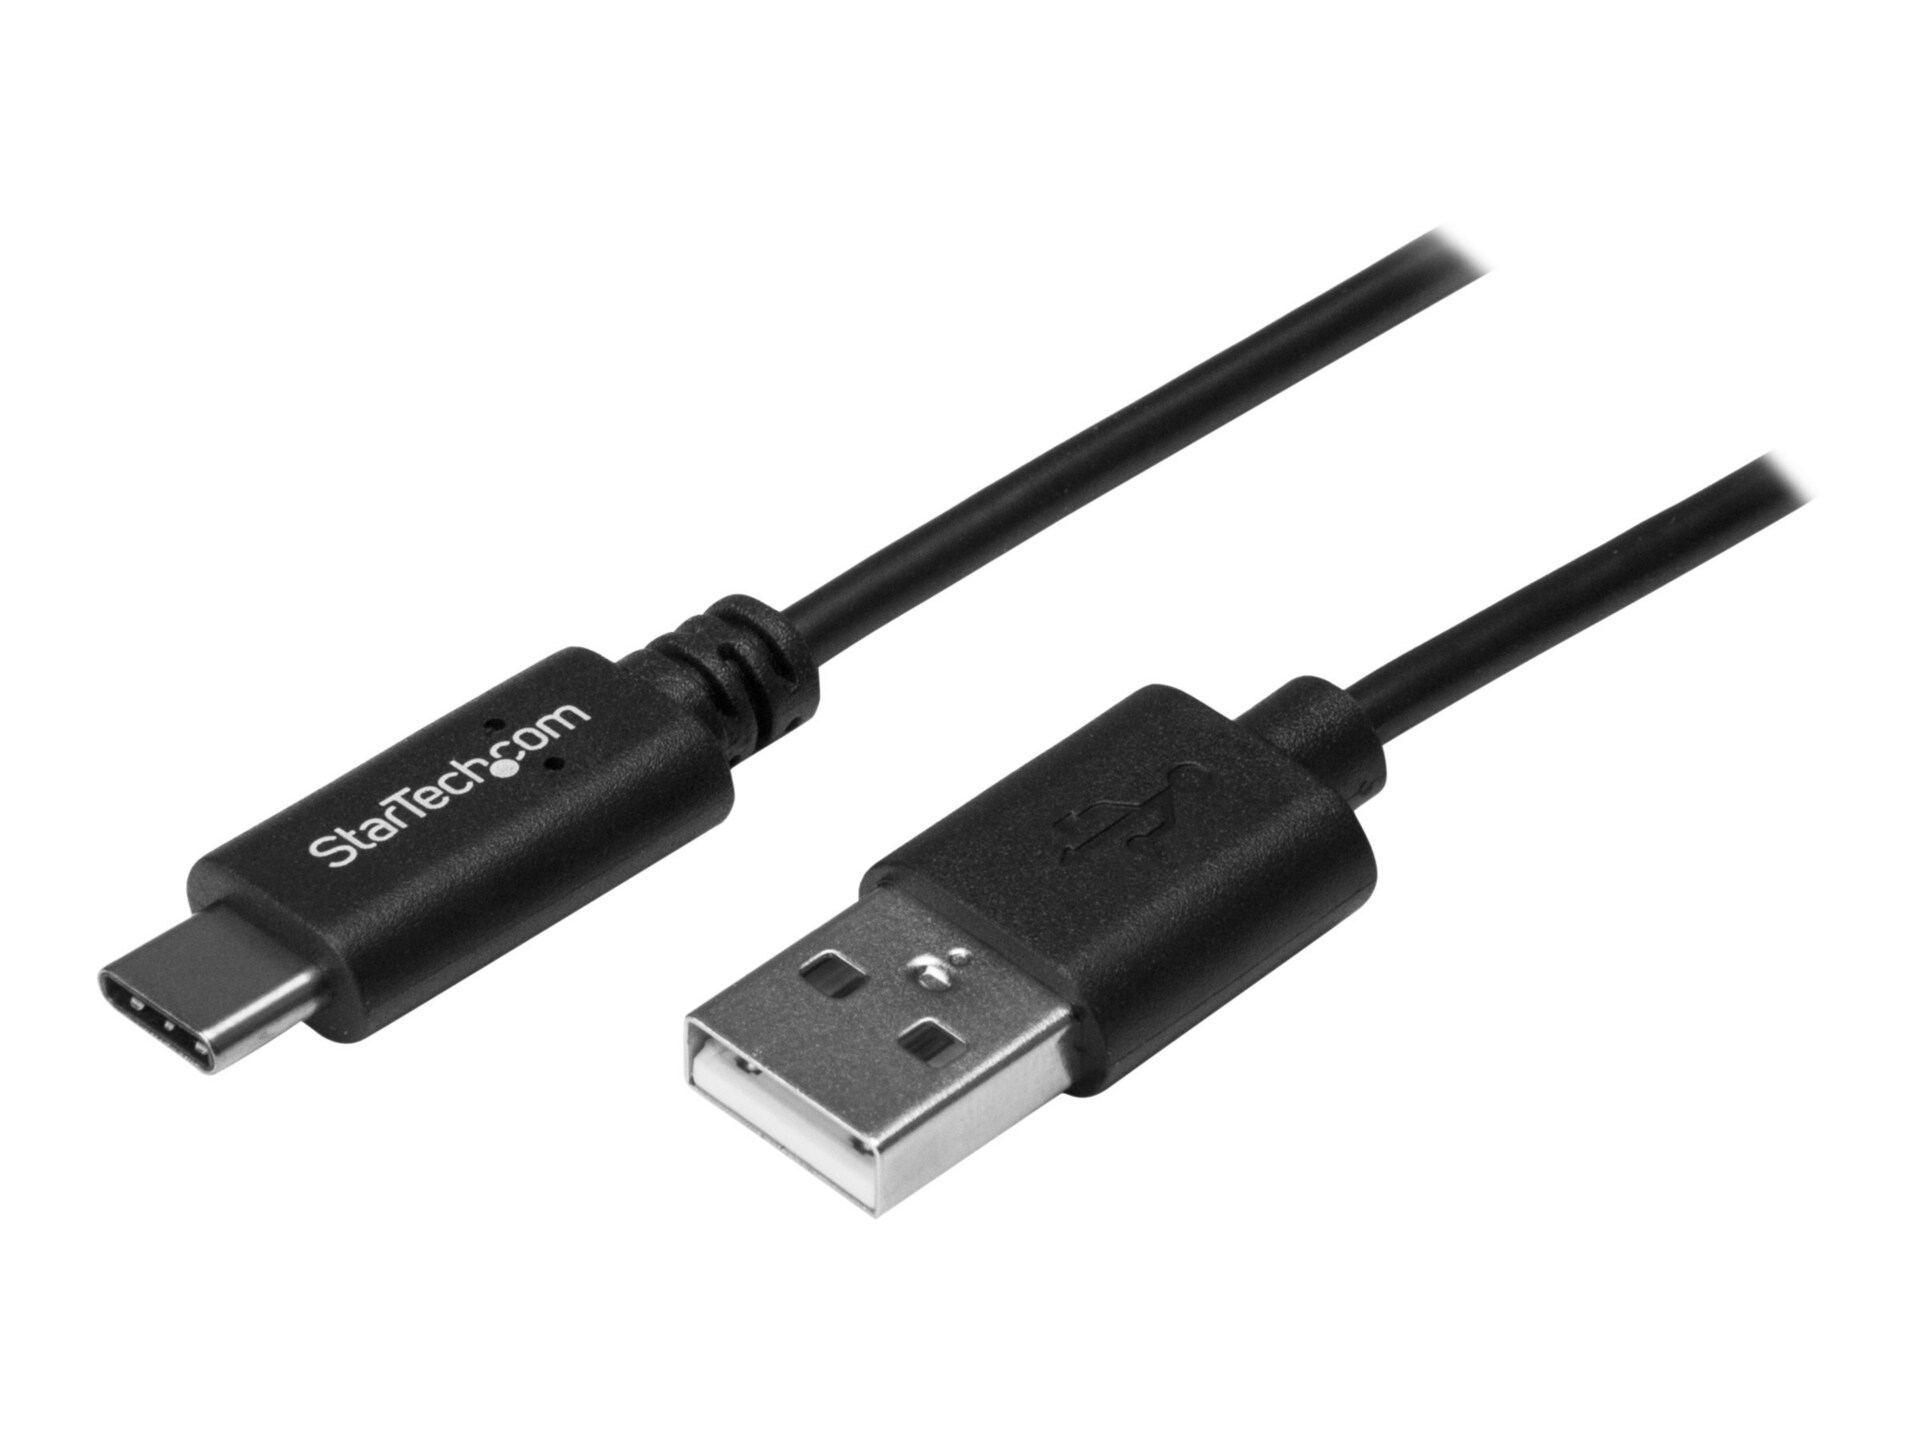 StarTech.com 0.5m USB C to USB A Cable - M/M - USB 2.0 - USB-C Charger Cable - USB 2.0 Type C to Type A Cable